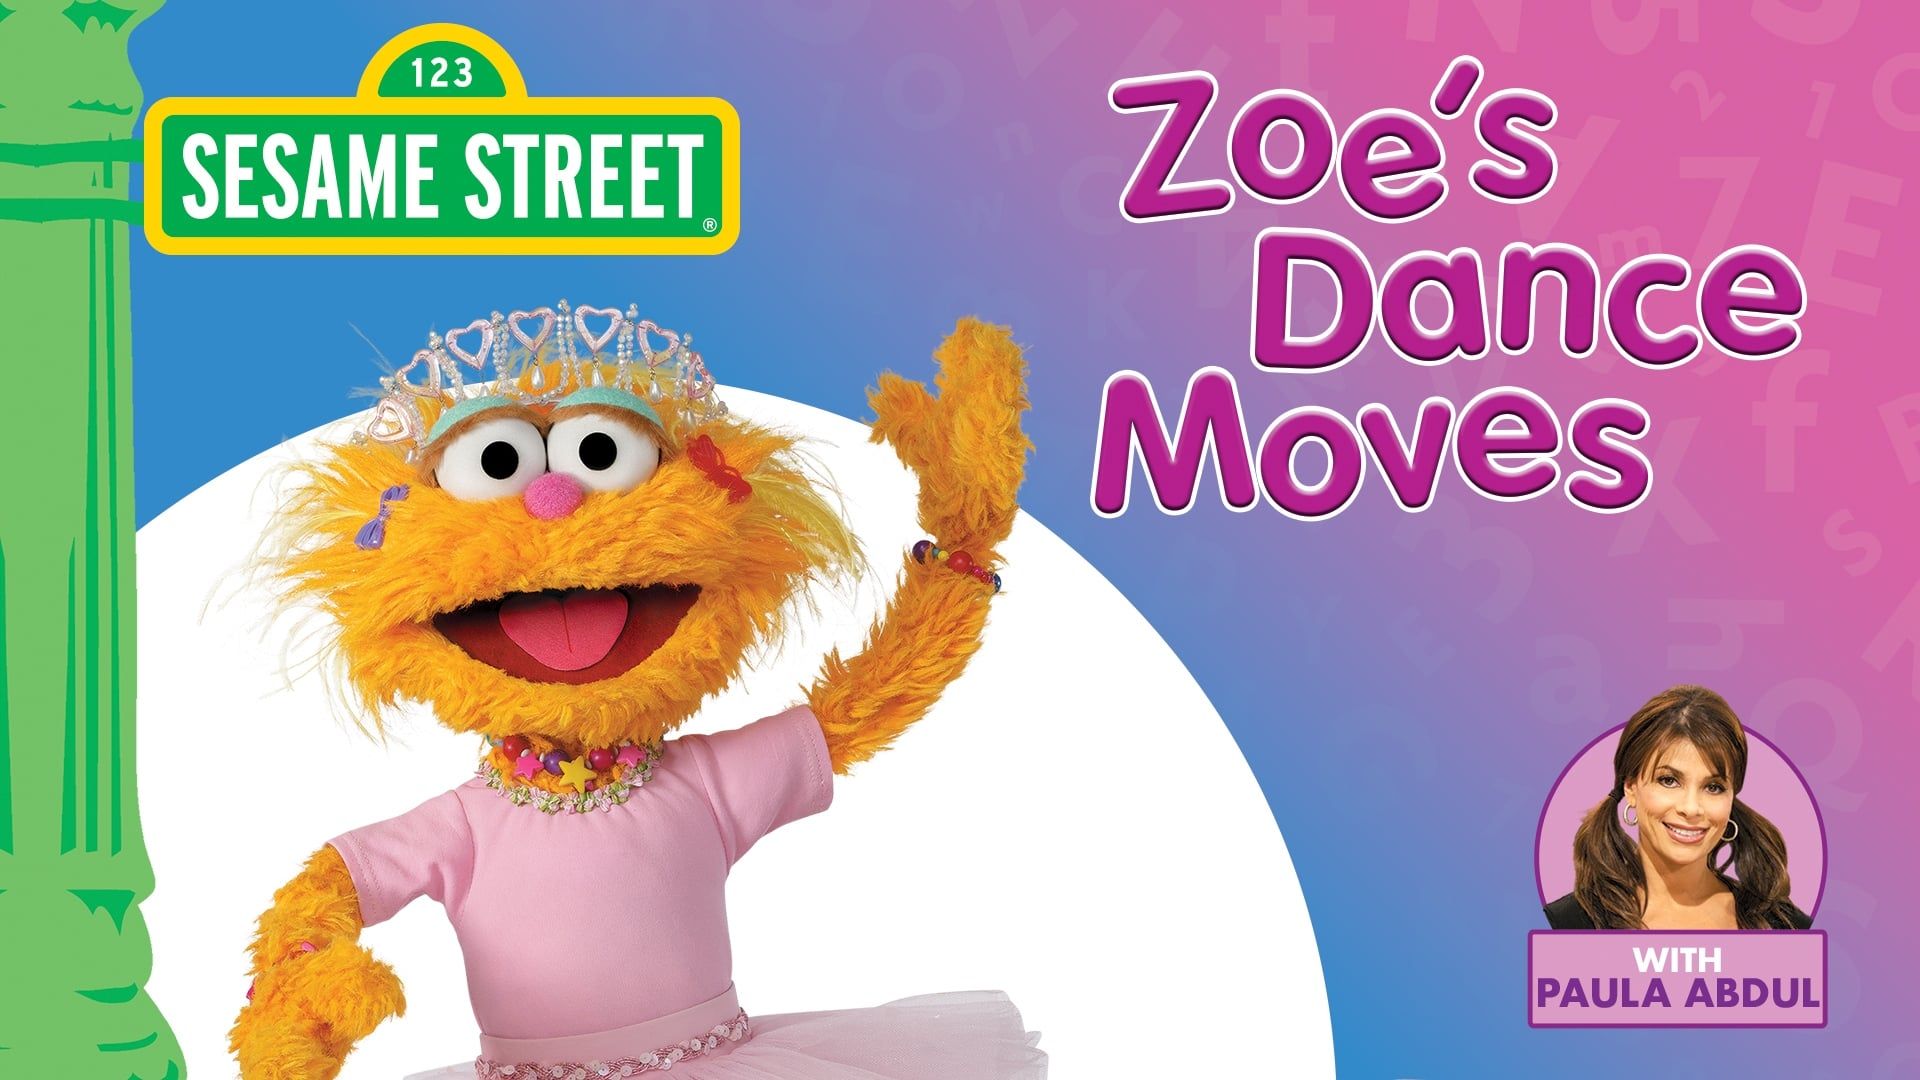 Sesame Street: Zoe's Dance Moves background